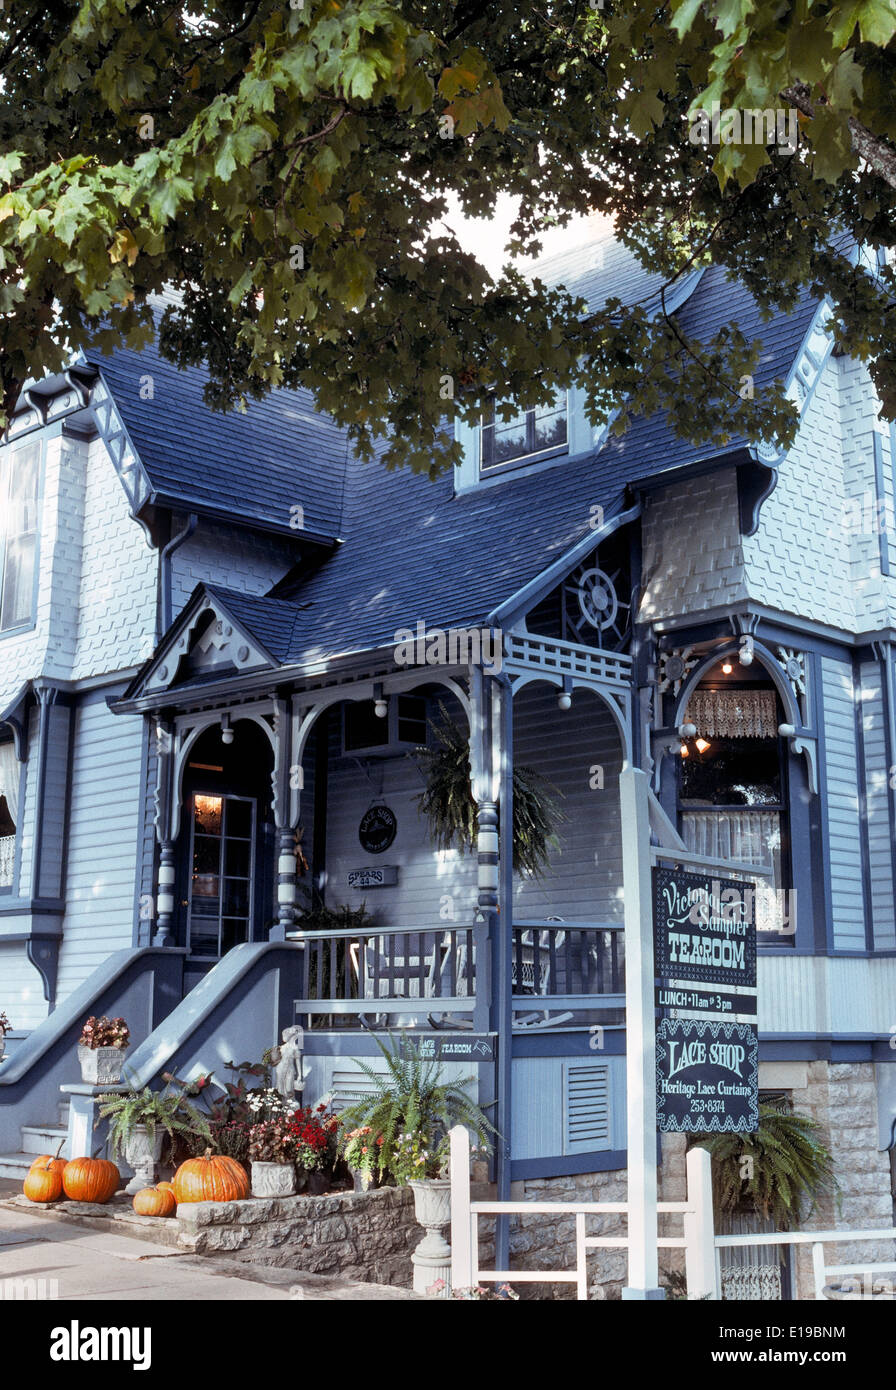 Viele historische viktorianische Häuser wie dieses geworden beliebten Geschäften und Restaurants in den Ozark Mountains Kleinstadt Eureka Springs, Arkansas, USA. Stockfoto